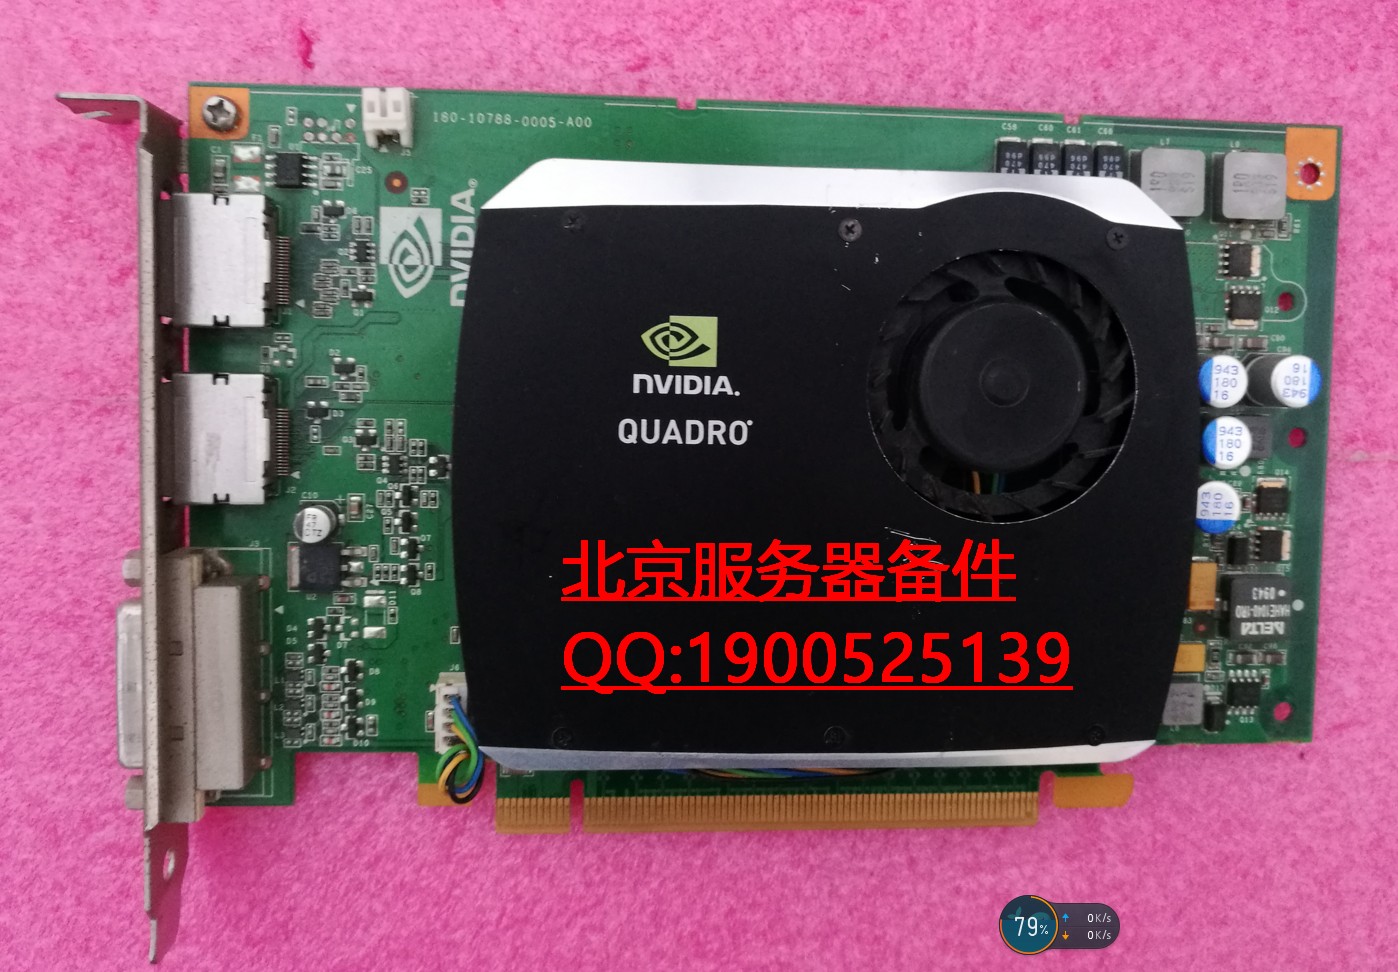 原装正品丽台 NVIDIA显卡 Quadro FX580 512MB 拼FX1800 FX3700